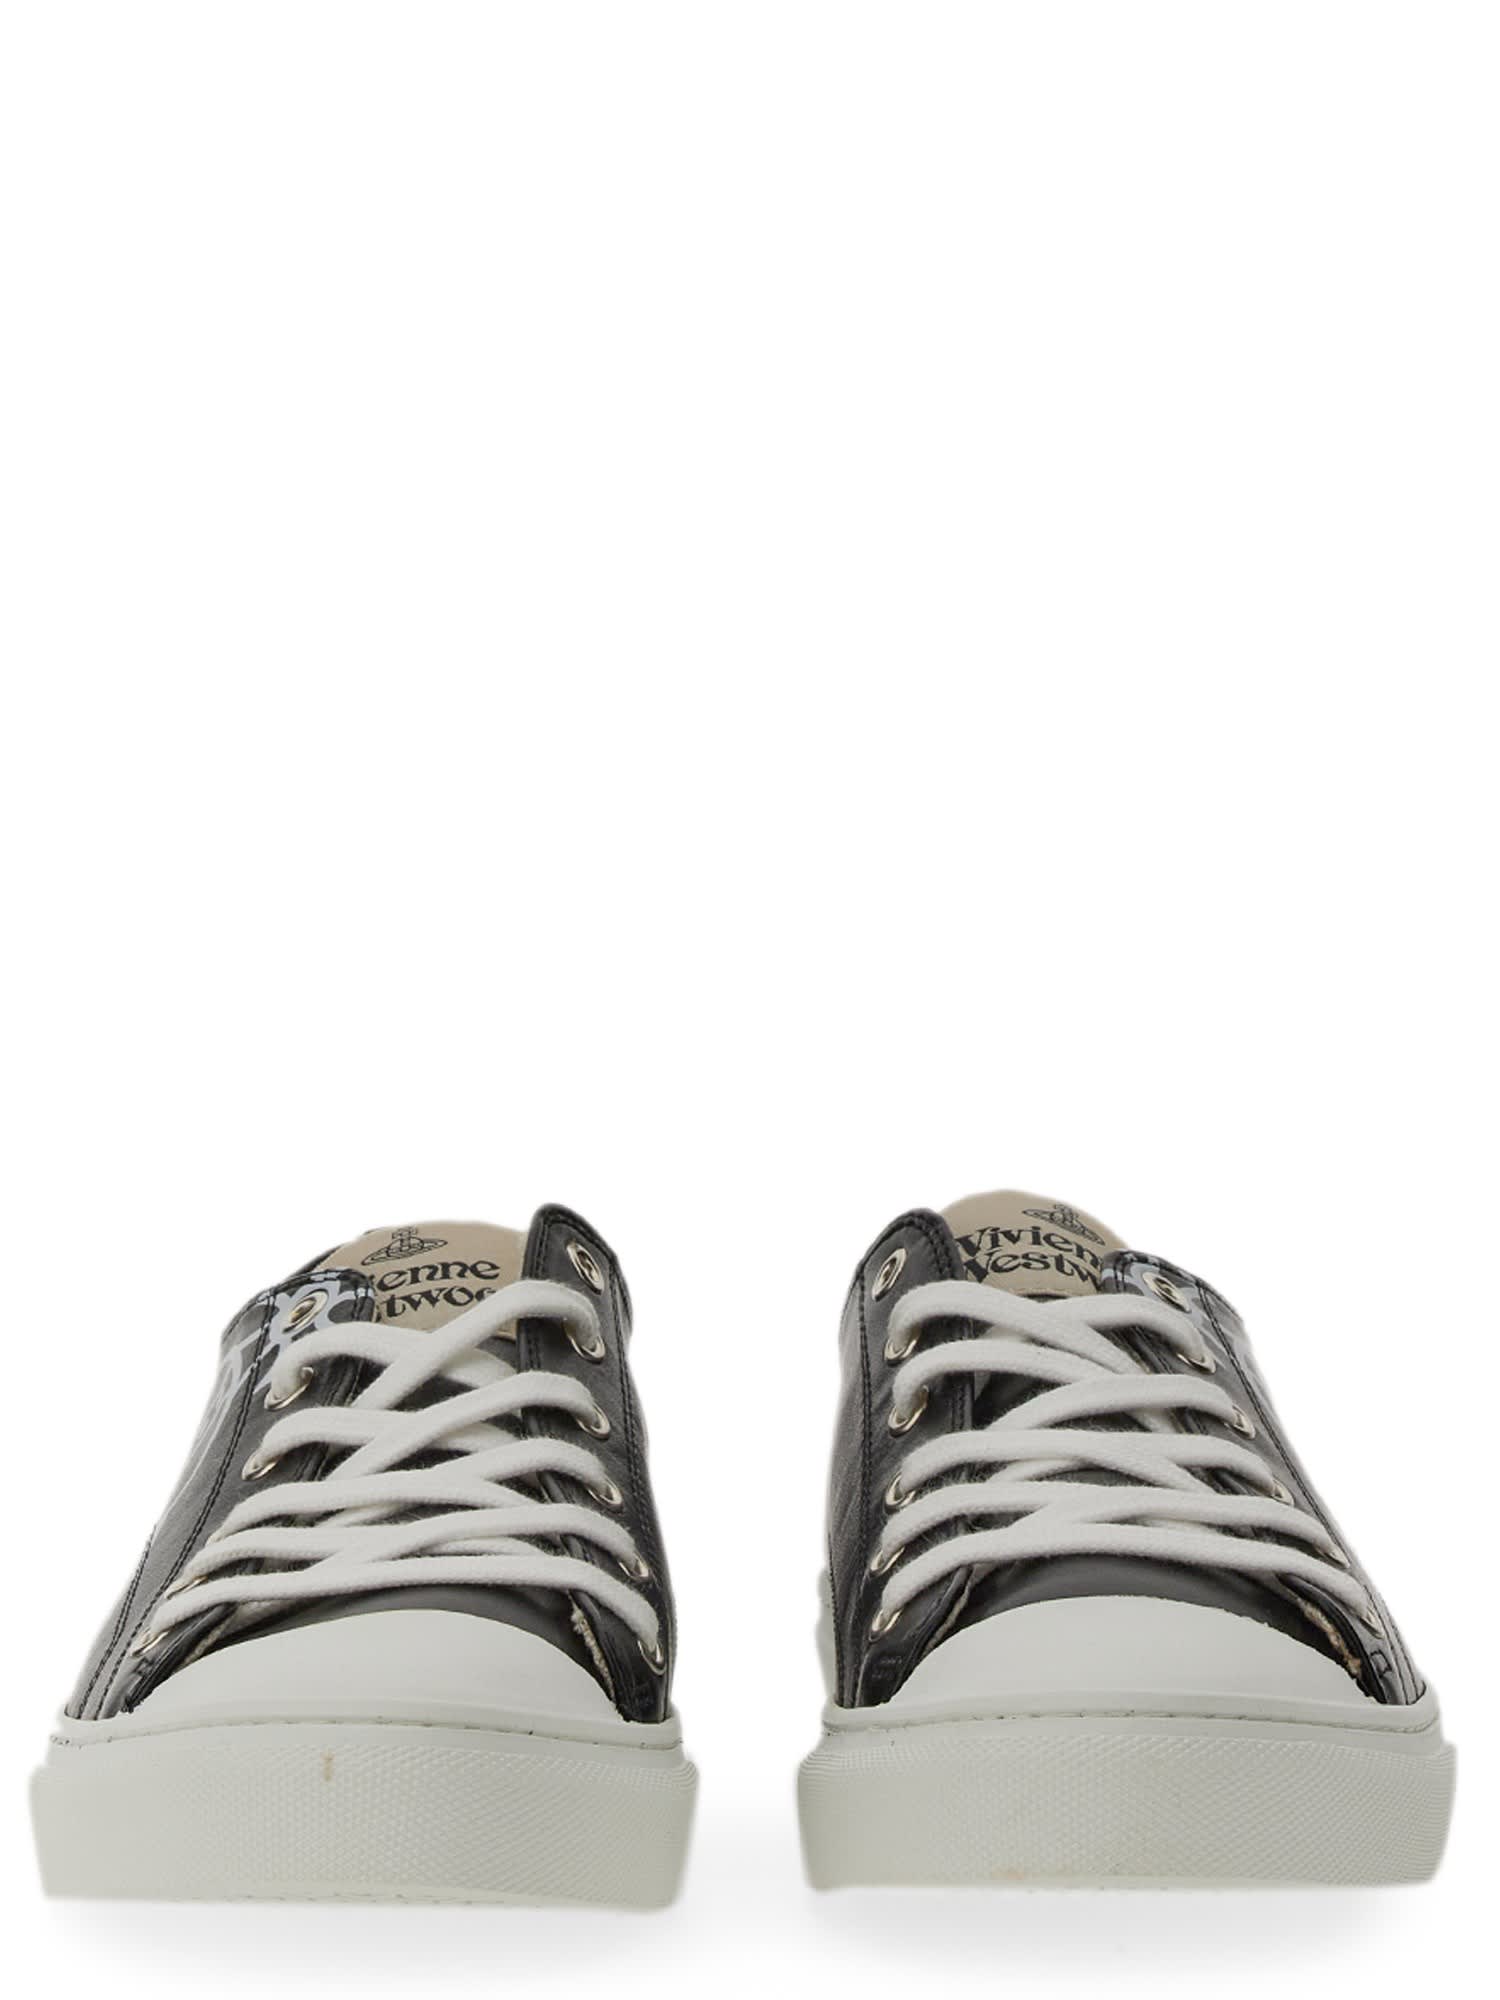 Plimsoll Faux Leather Sneakers in Black - Vivienne Westwood